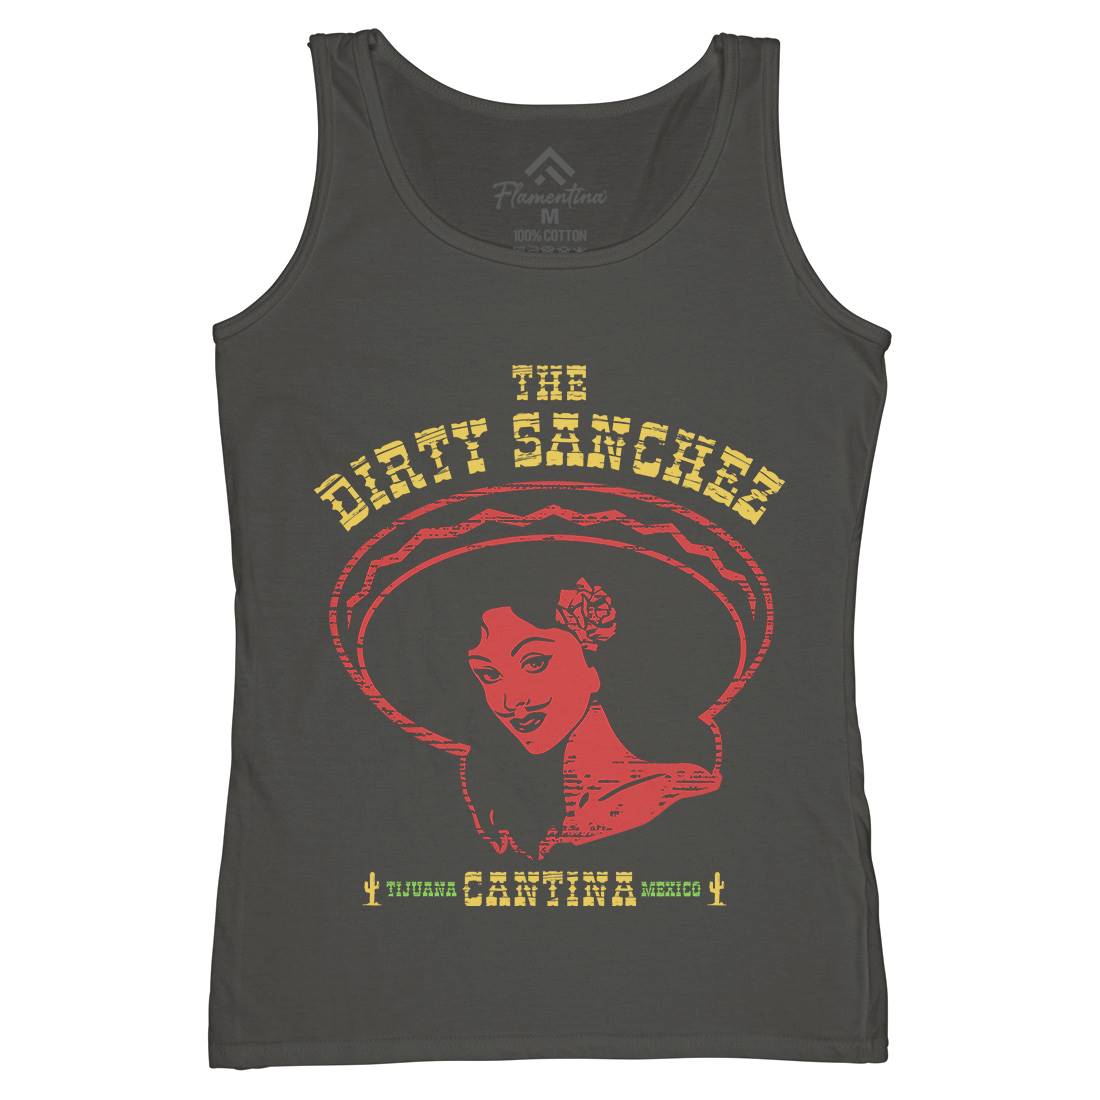 Dirty Sanchez Womens Organic Tank Top Vest Retro D354